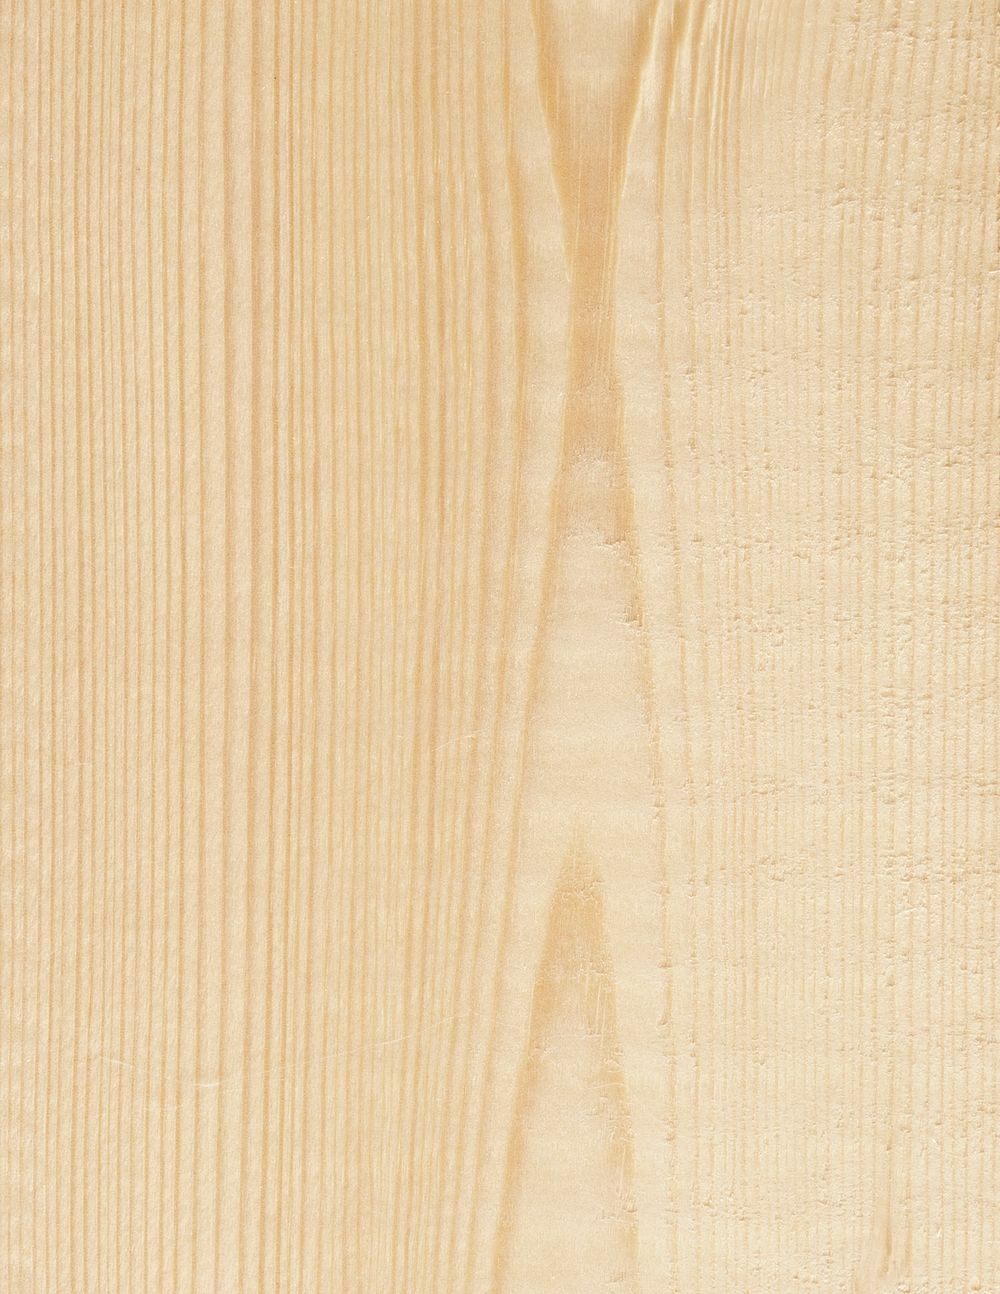 Natural beige wood texture background, wooden floor design